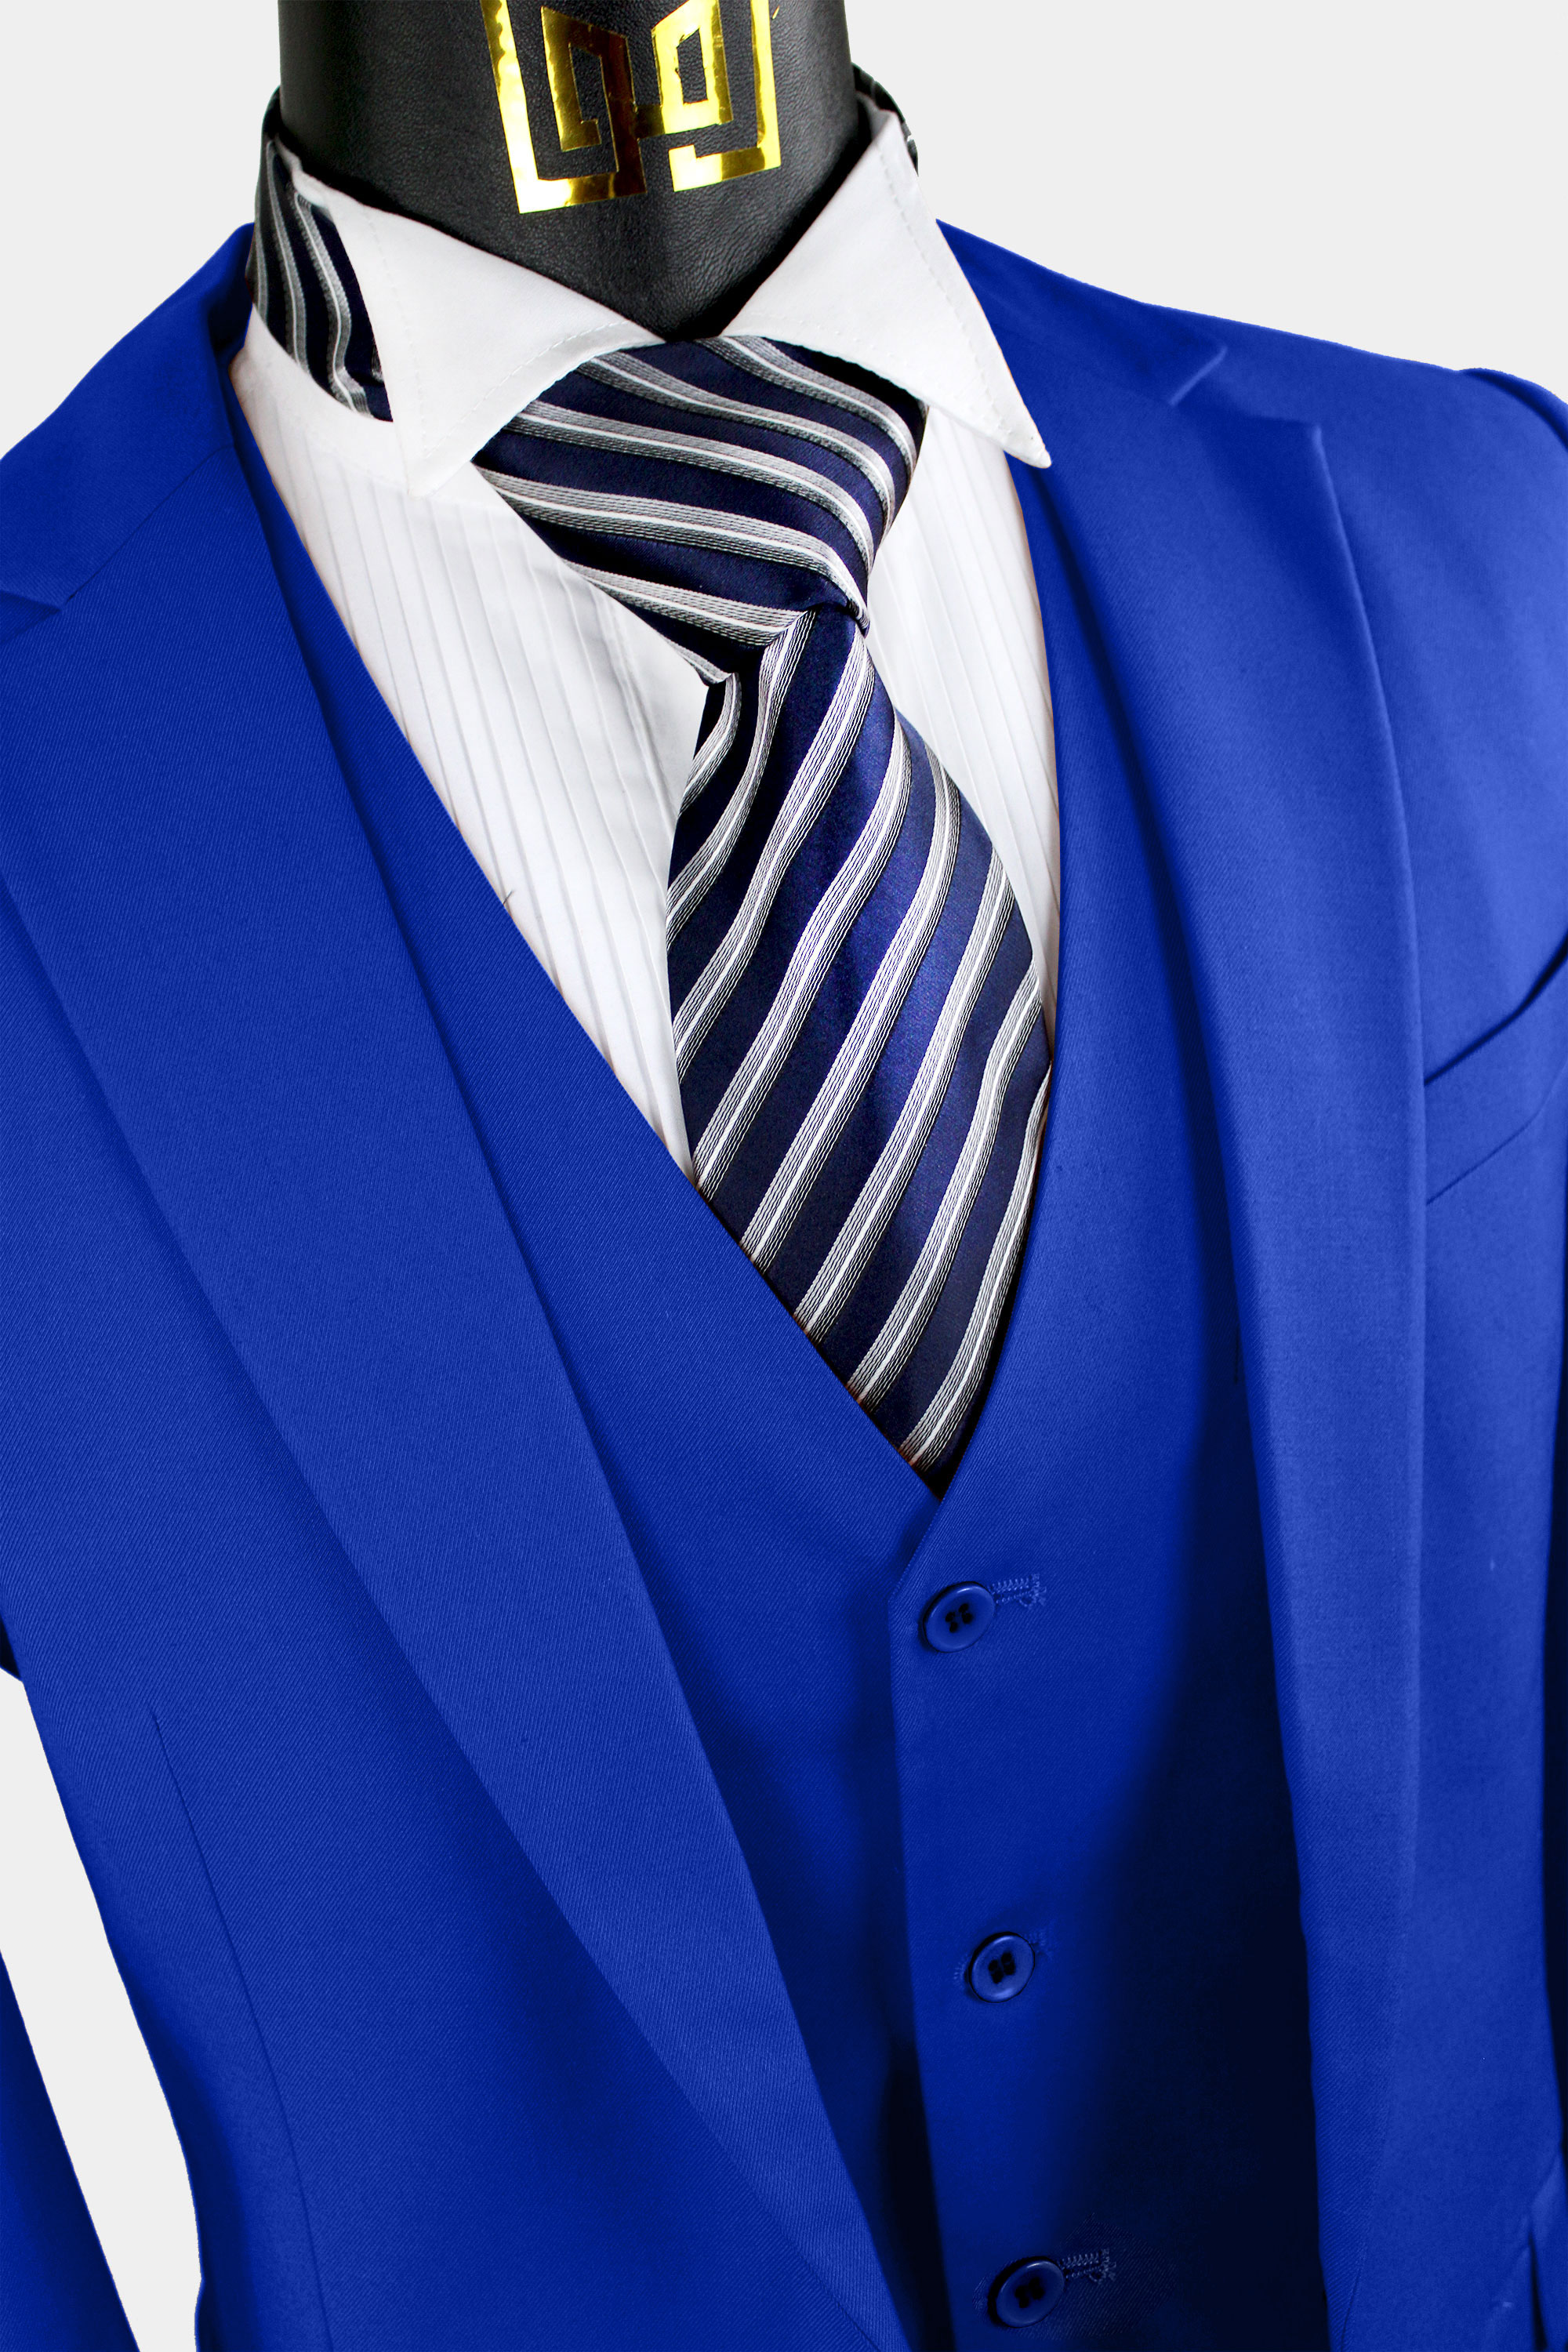  Royal Blue Suits